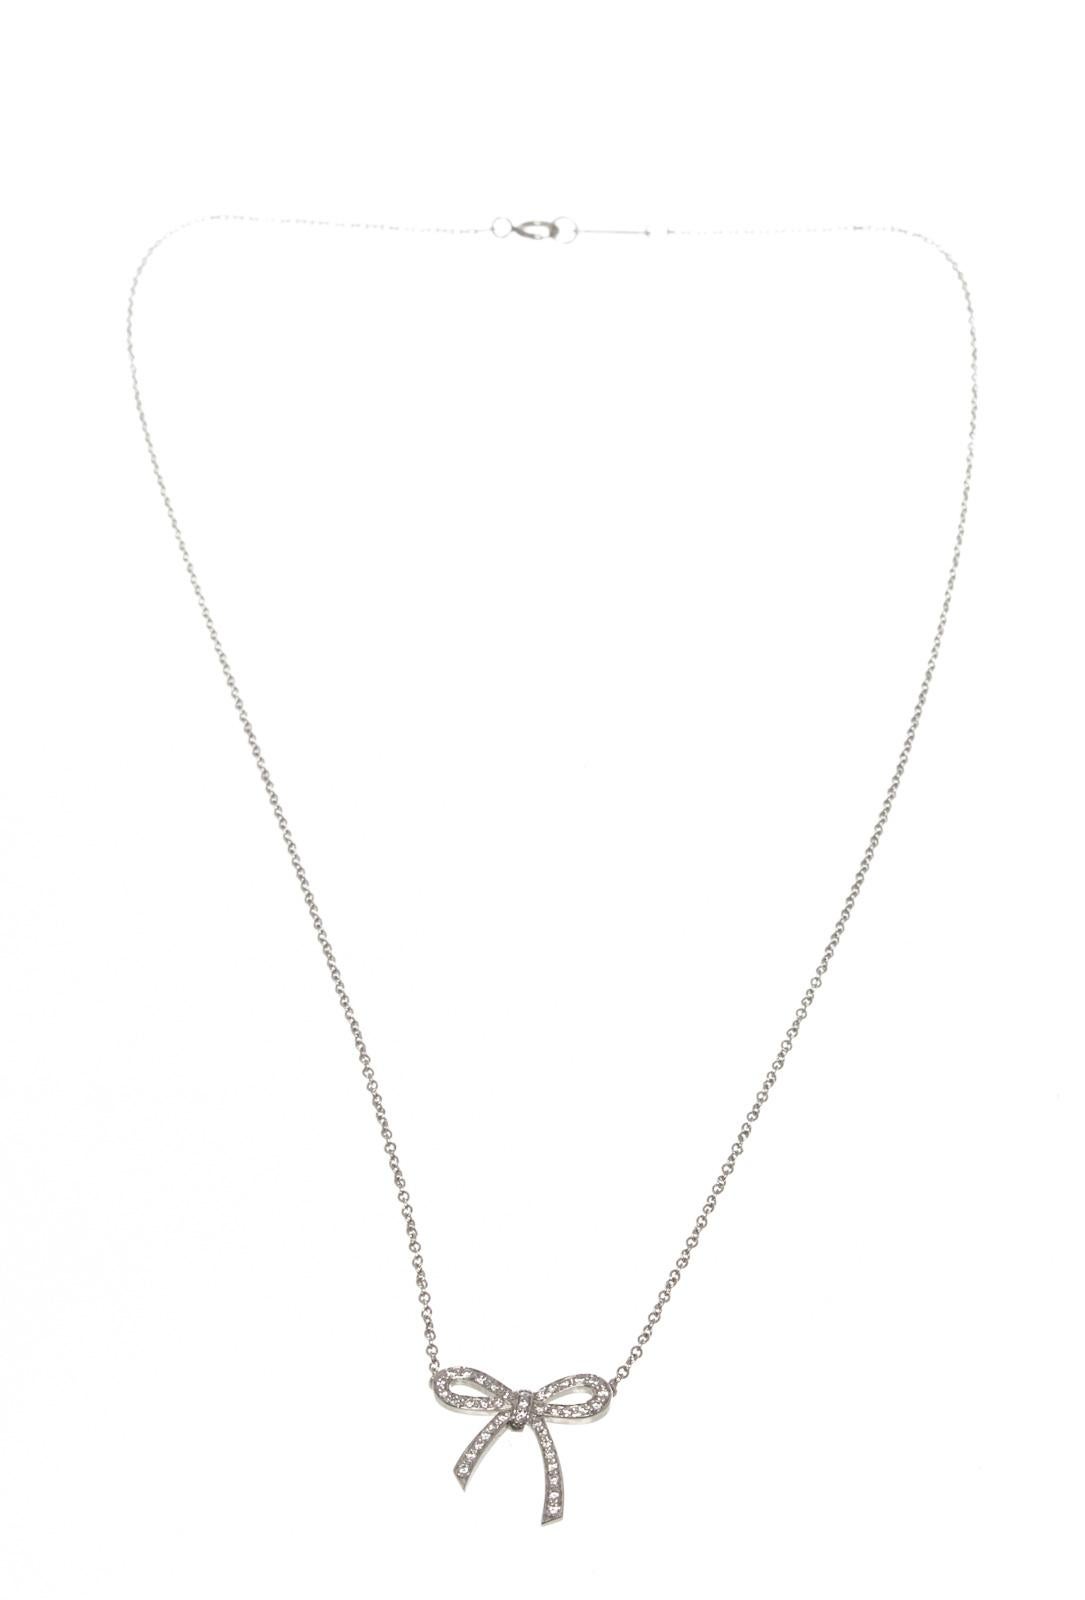 hardware necklace tiffany